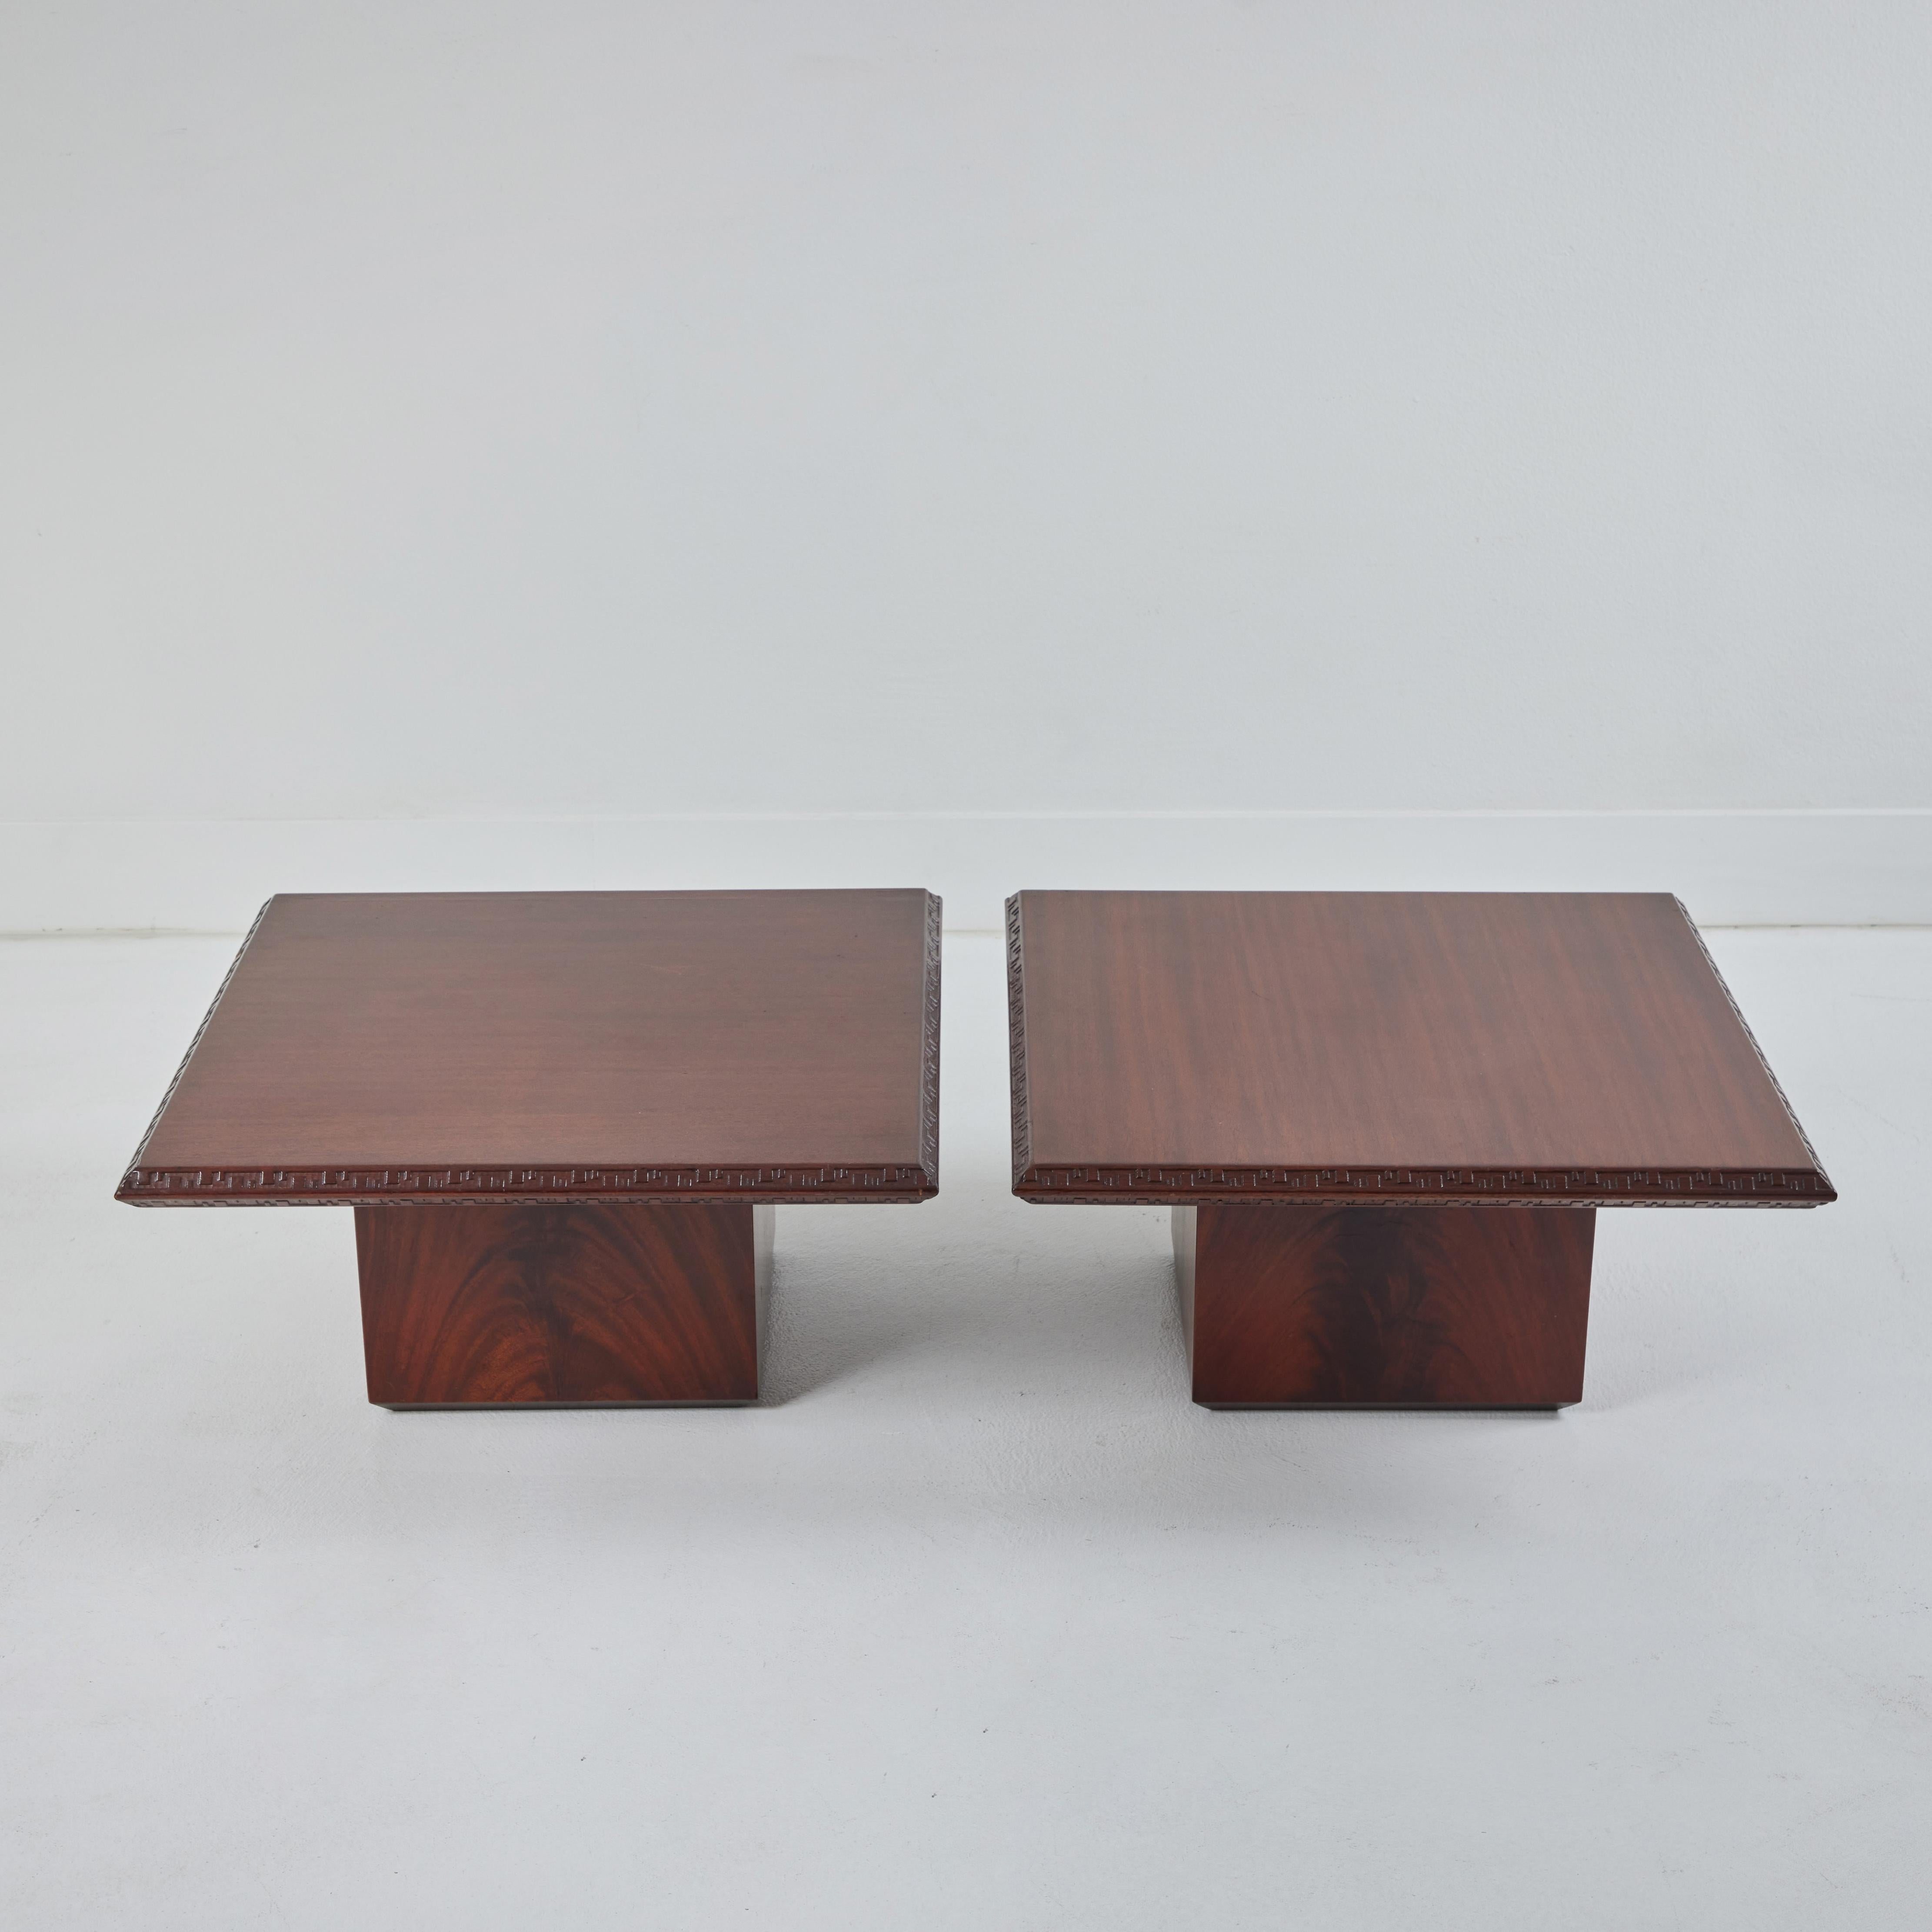 Es handelt sich um zwei niedrige Mahagoni-Cocktailtische, die Frank Loyd Wright im Rahmen seiner Taliesin-Kollektion entworfen hat. Diese Tische wurden 1955 für Heritage-Henredon entworfen und sind wunderschön konstruiert. Diese eleganten, niedrigen